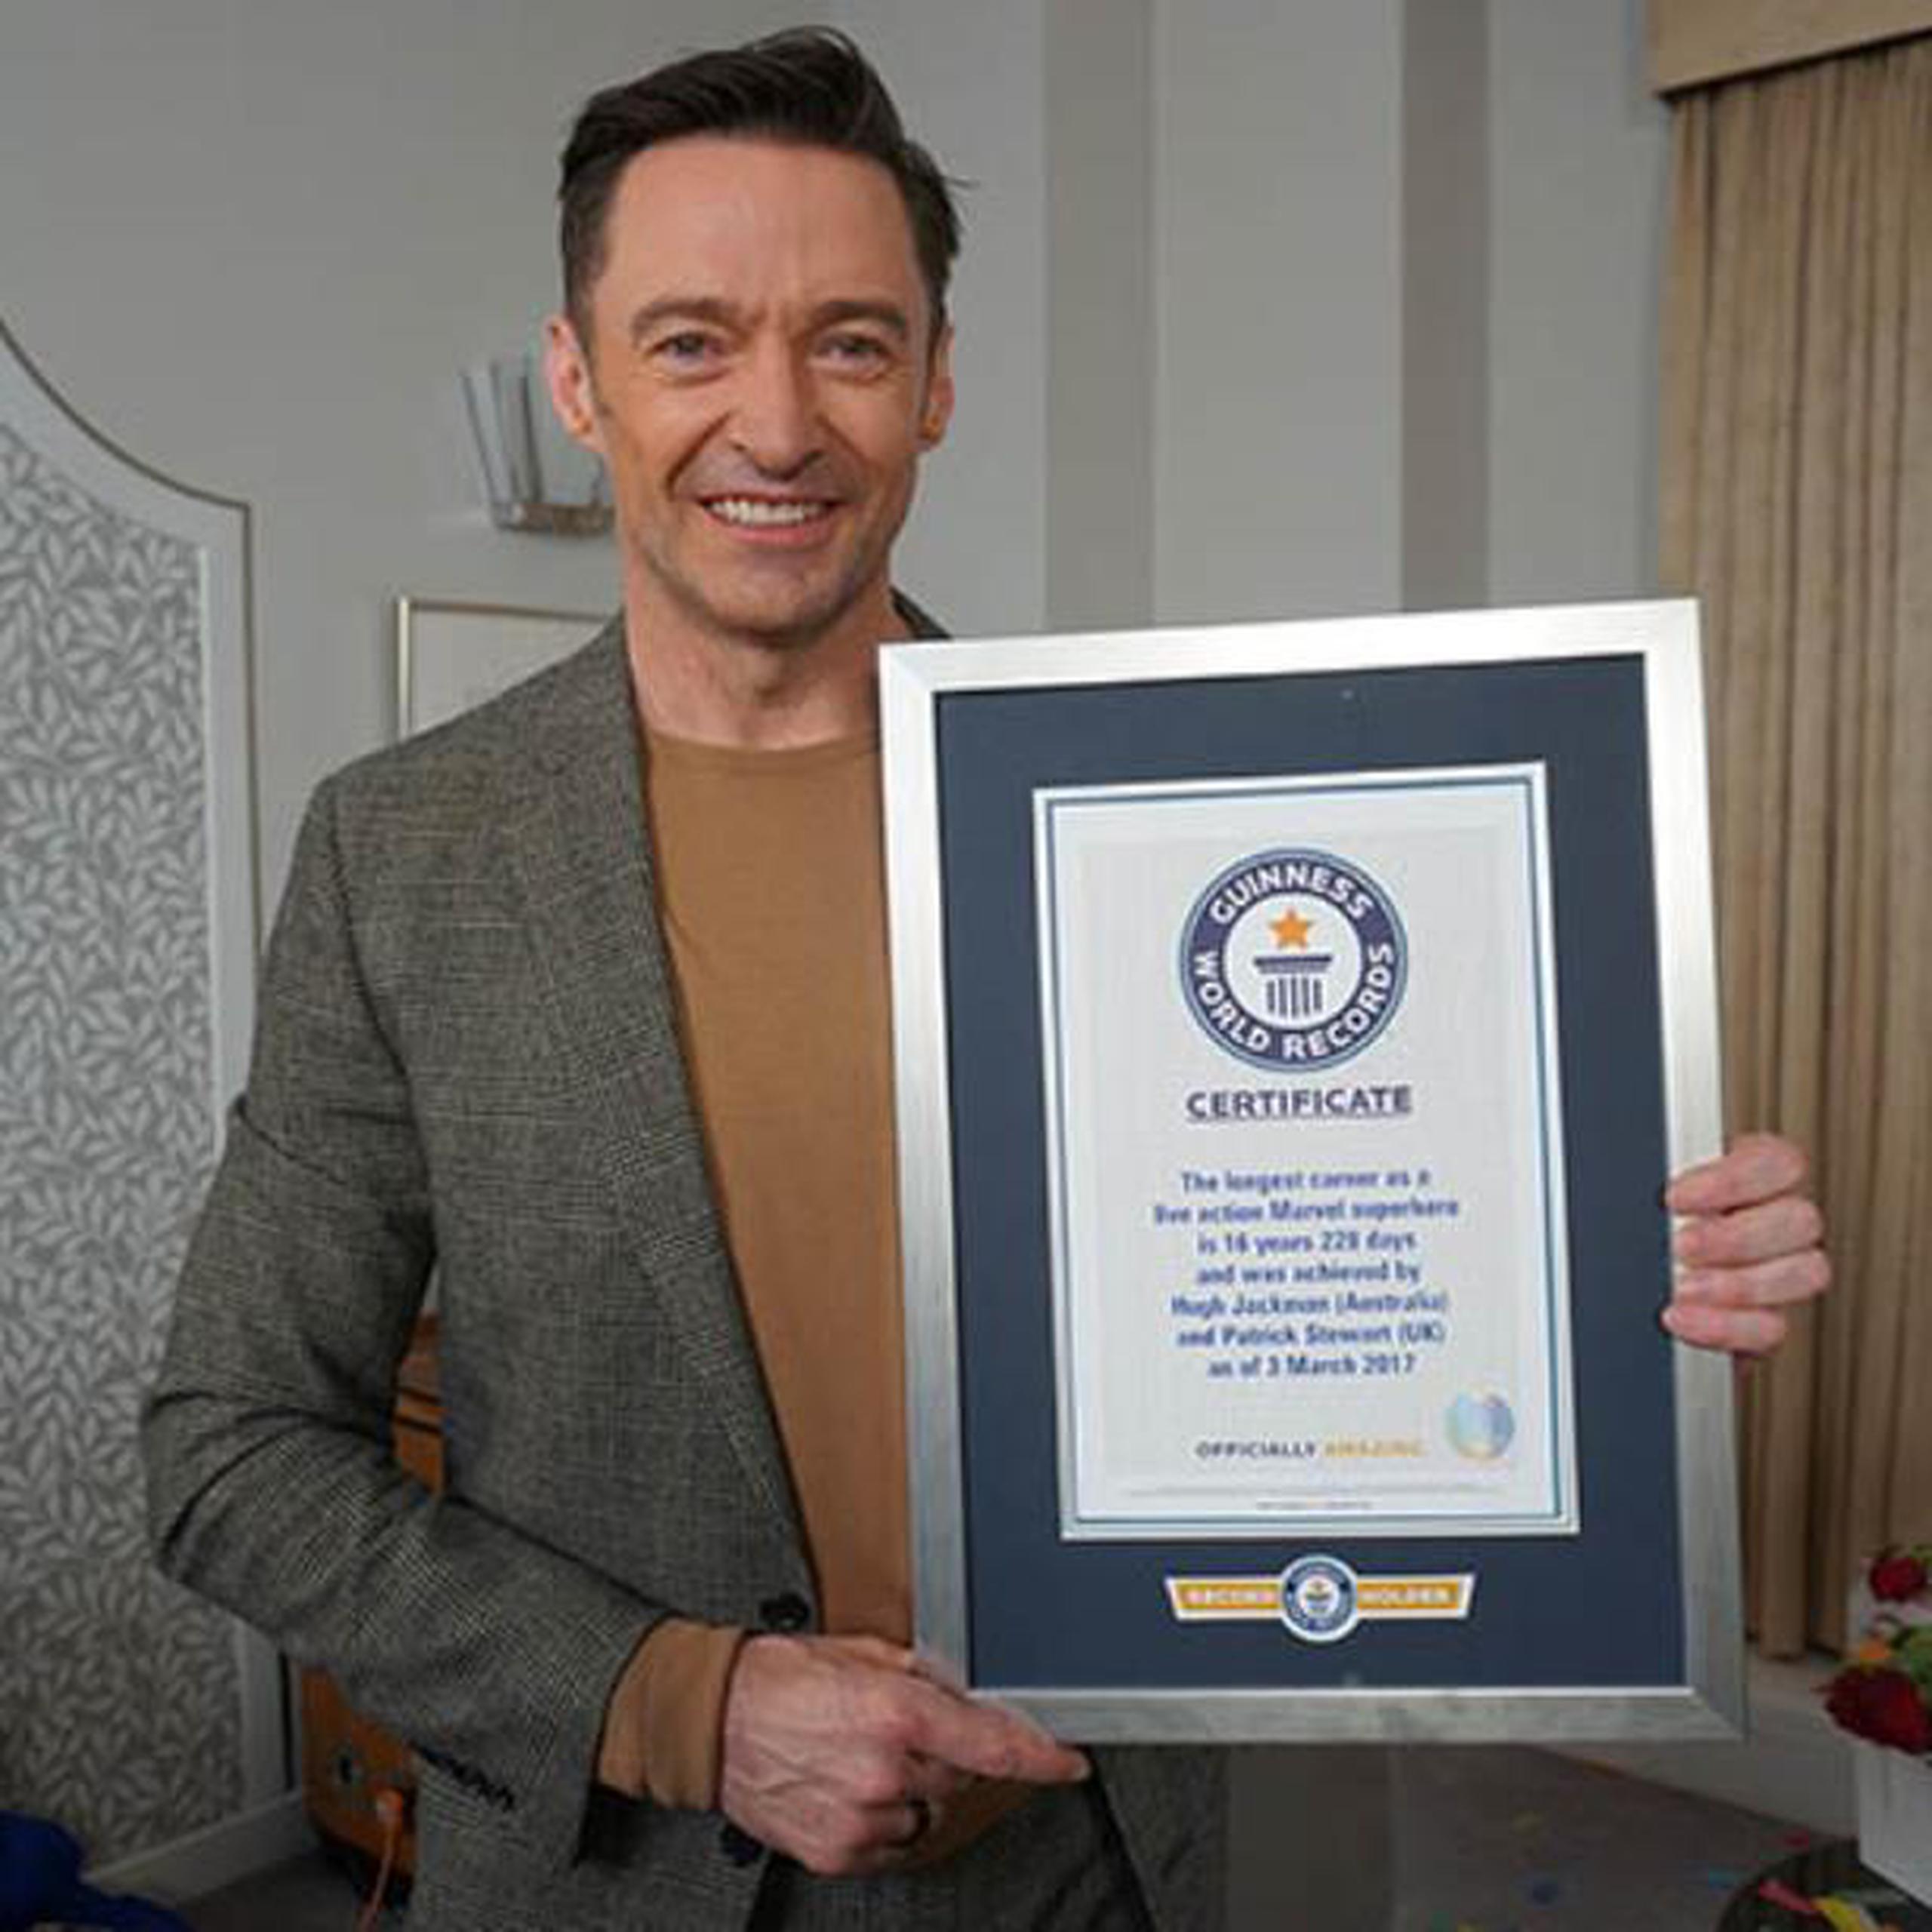 El récord de Hugh Jackman le fue entregado durante una entrevista. (Guinness World Records)